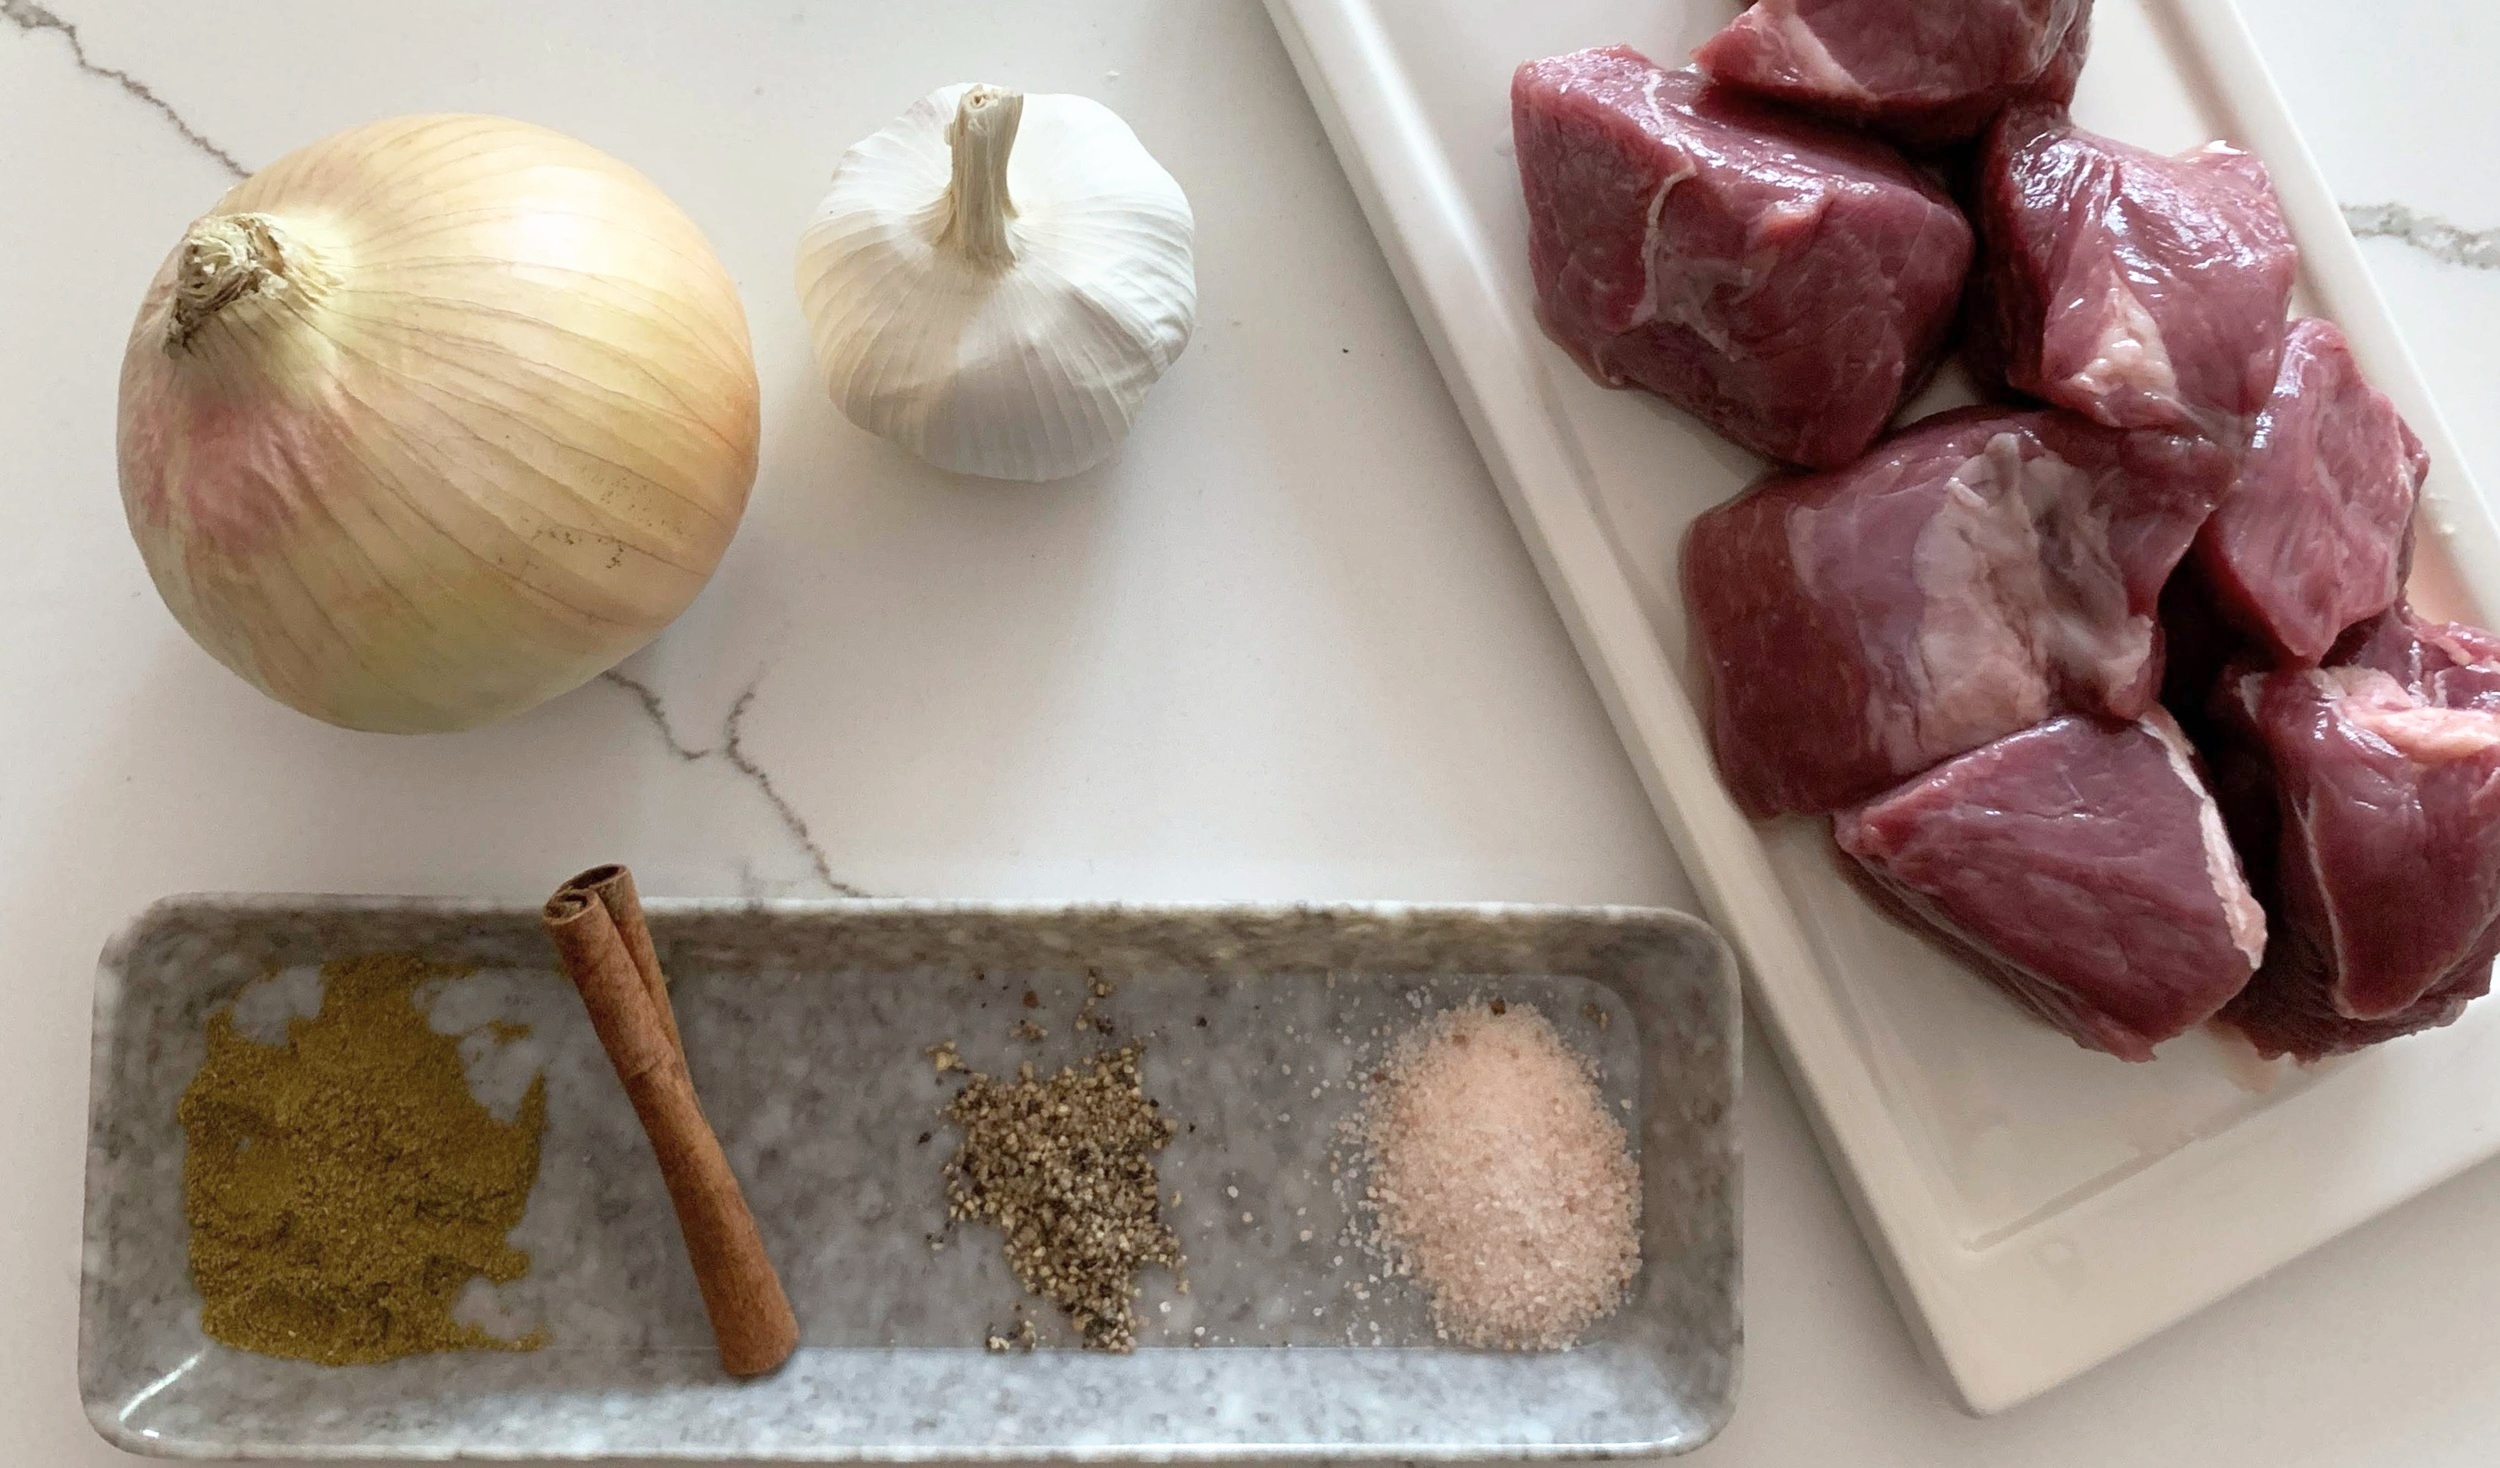 Garlicky Tagine Stew Ingredients